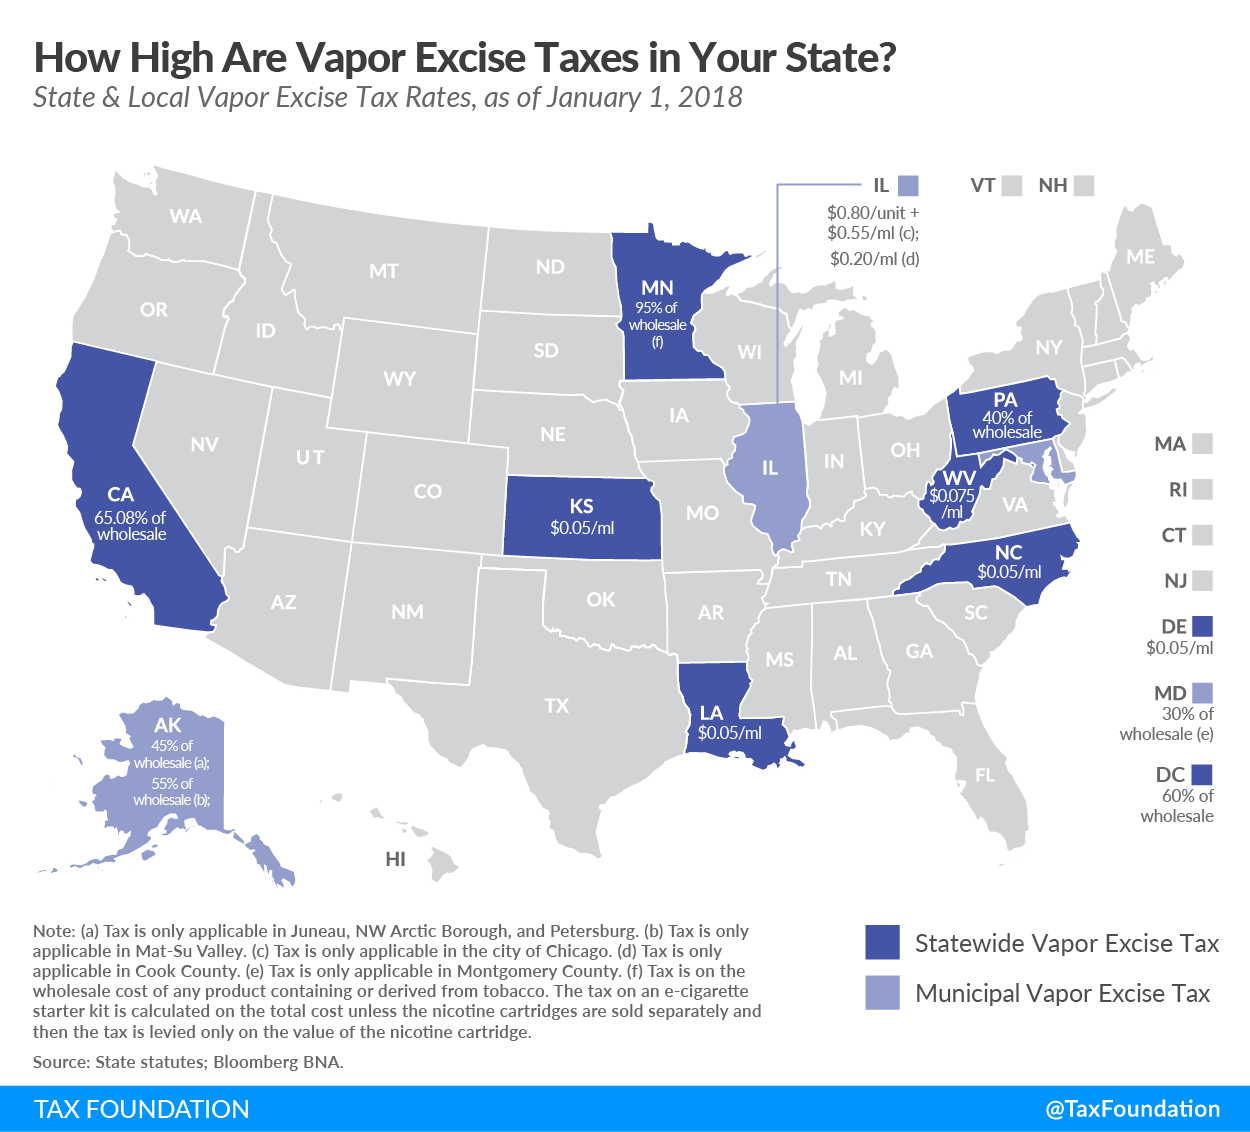 State & Local Vapor Taxes 2018